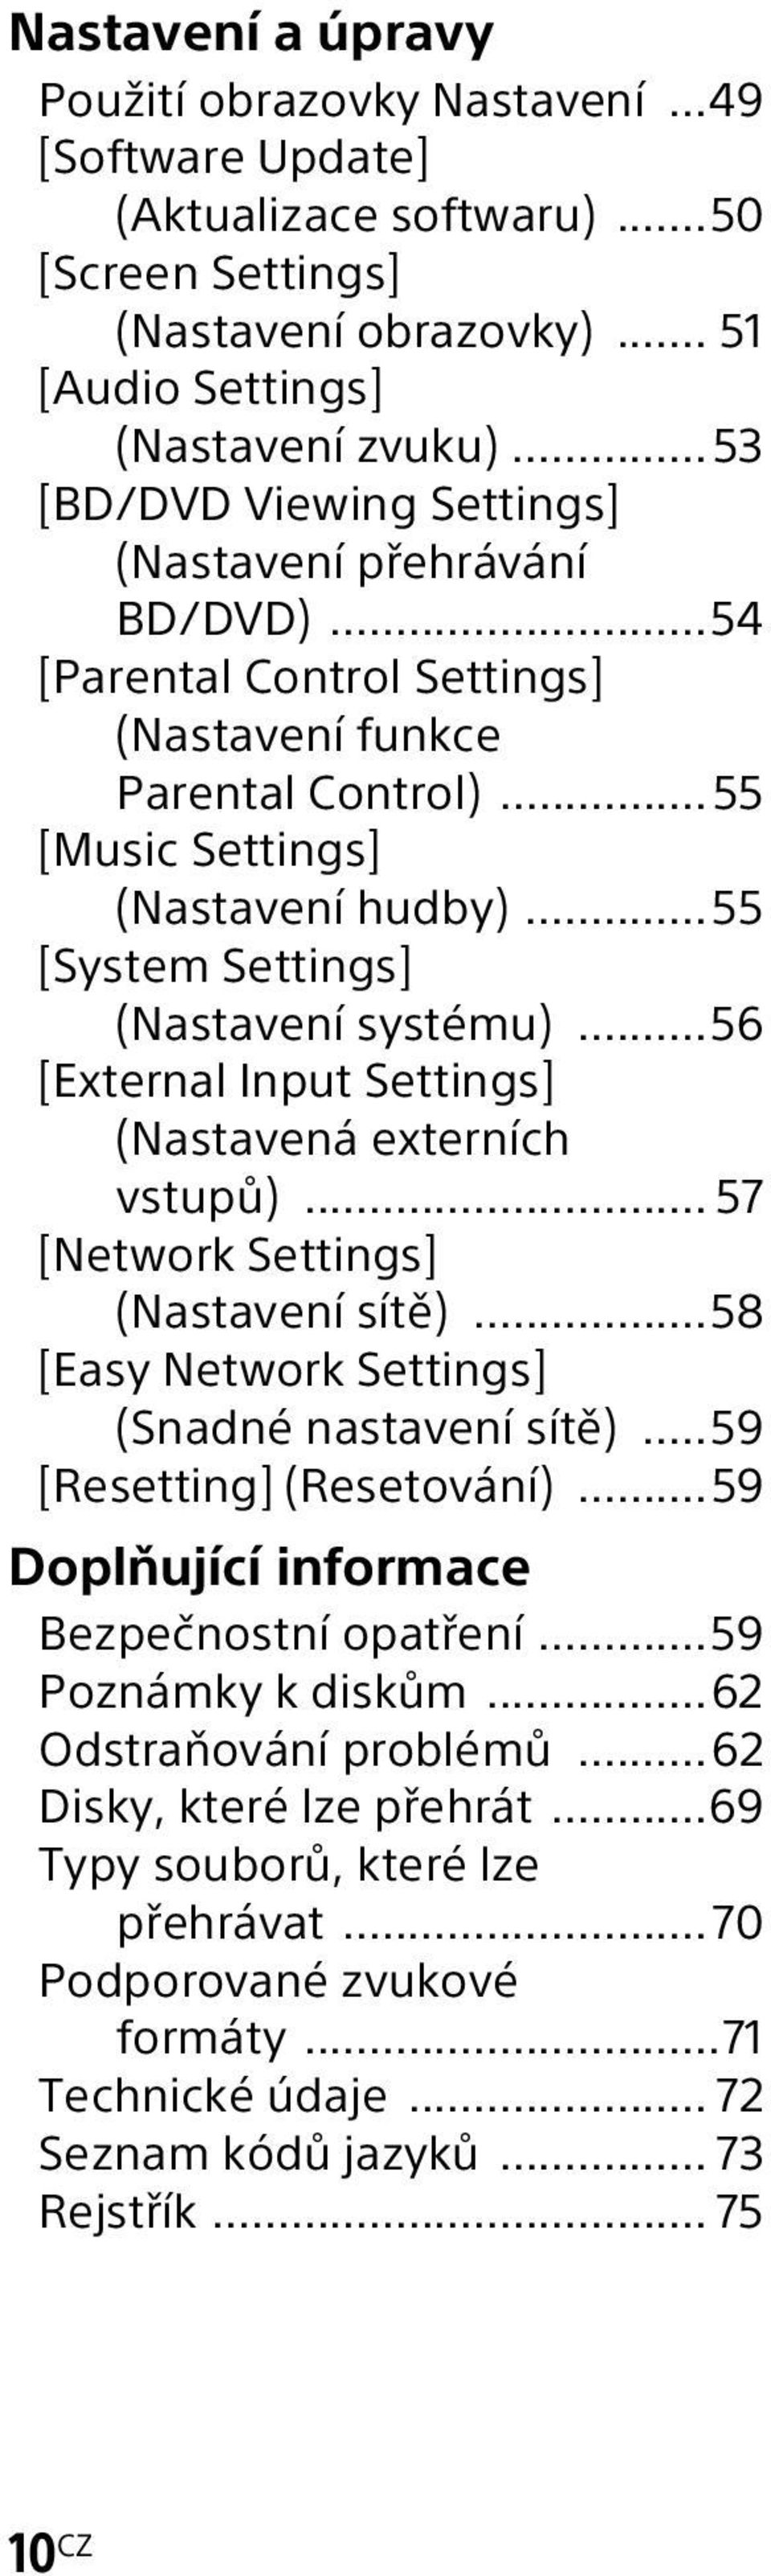 ..55 [System Settings] (Nastavení systému)...56 [External Input Settings] (Nastavená externích vstupů)... 57 [Network Settings] (Nastavení sítě)...58 [Easy Network Settings] (Snadné nastavení sítě).